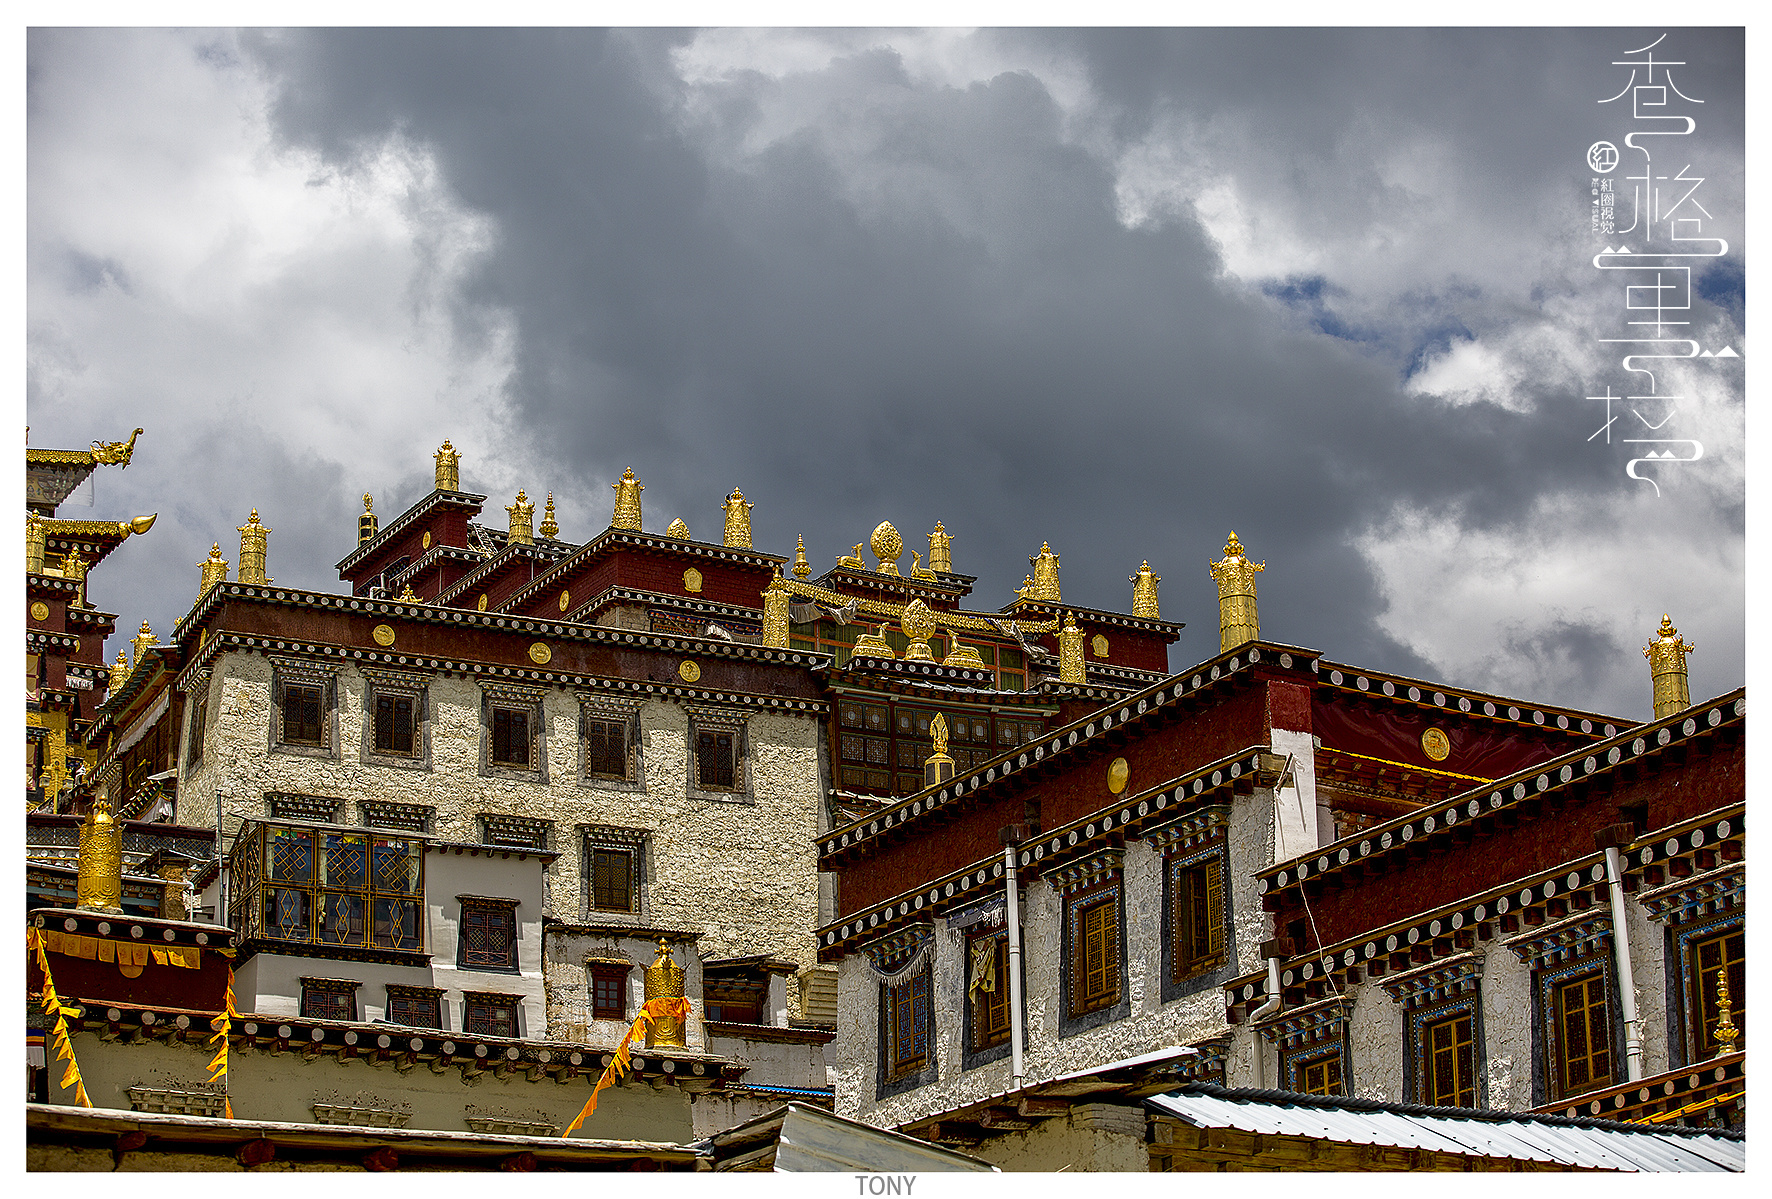 【携程攻略】香格里拉香巴拉时轮坛城文化博览中心景点,香巴拉博物馆位于迪庆县城，中心大楼11层，塔式金顶，比较有藏族的建…